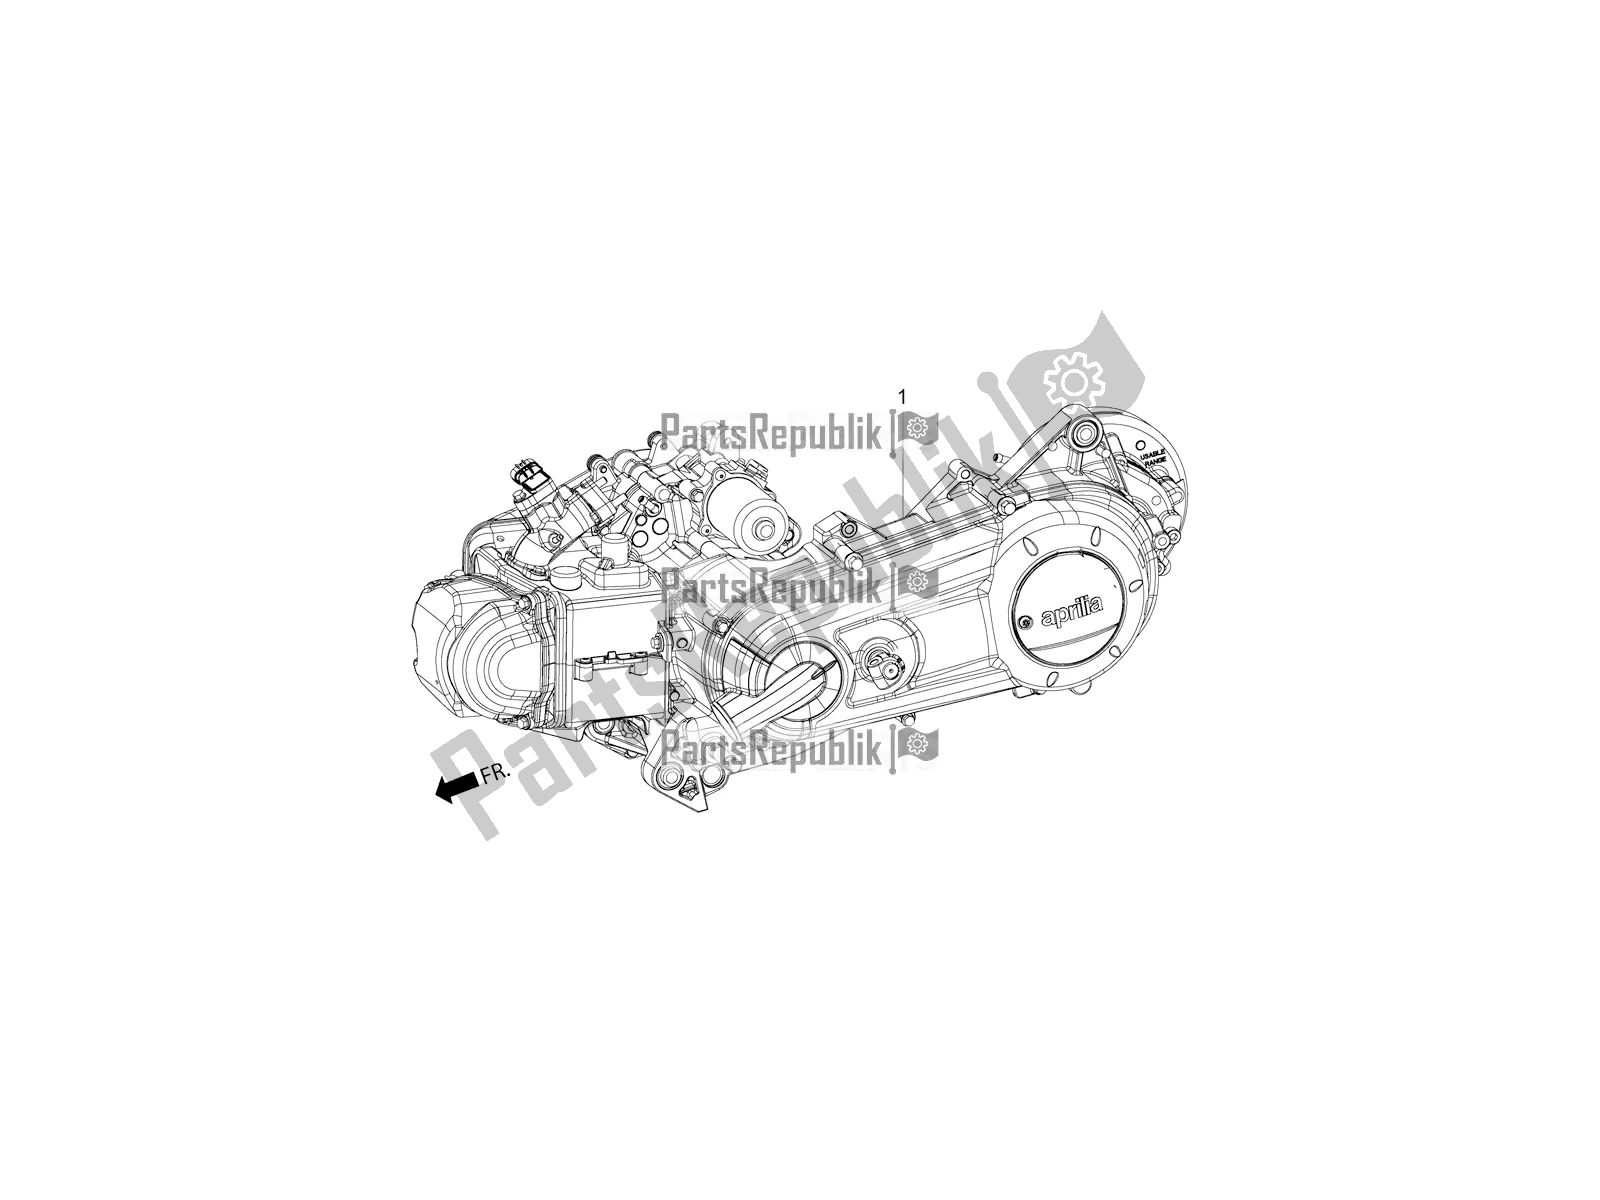 Tutte le parti per il Complete Engine del Aprilia SR Motard 150 ABS Racer Carb. Latam 2018